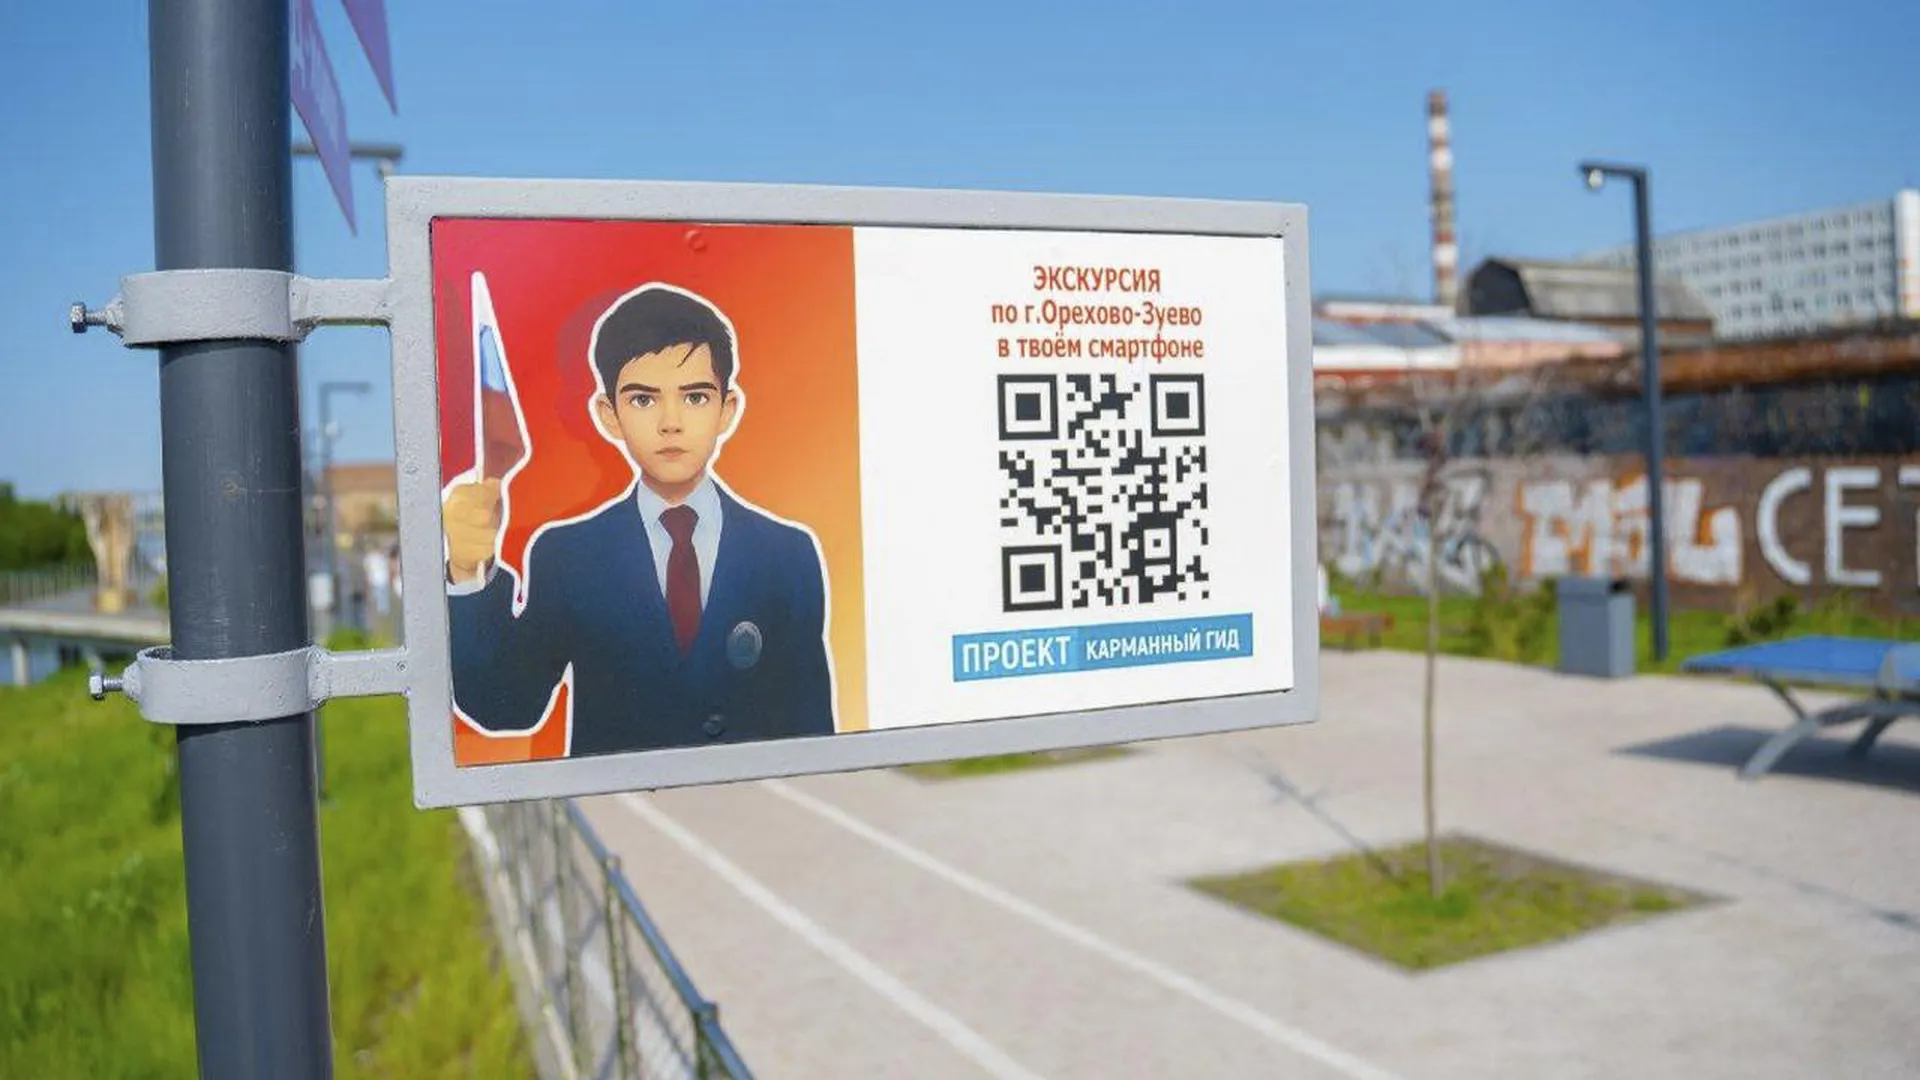 Семилетний мальчик из Орехово-Зуева создал туристический видеогид и прославился на всю Россию